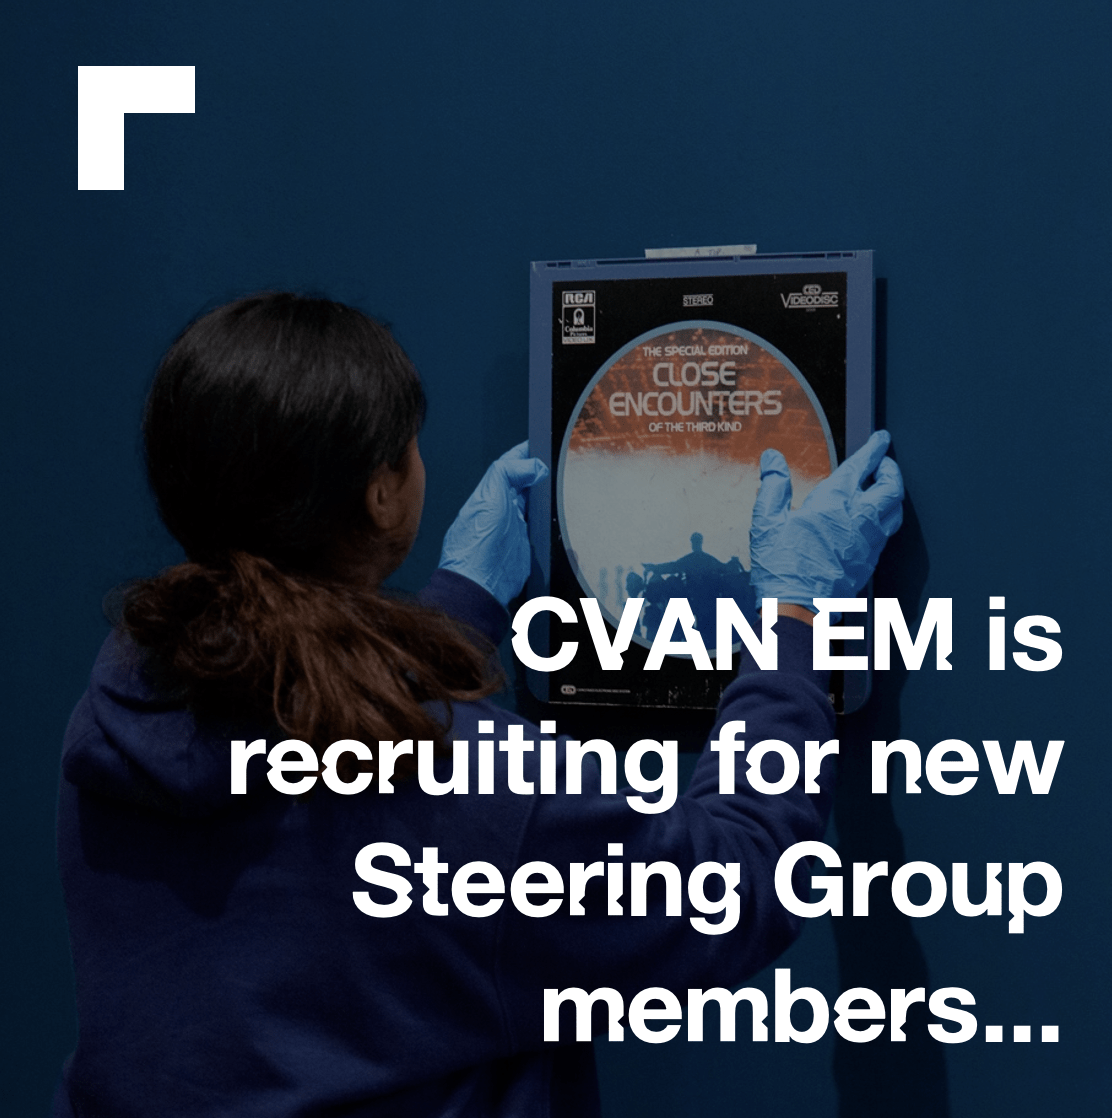 CVAN EM is looking for 2 new Steering Group members!